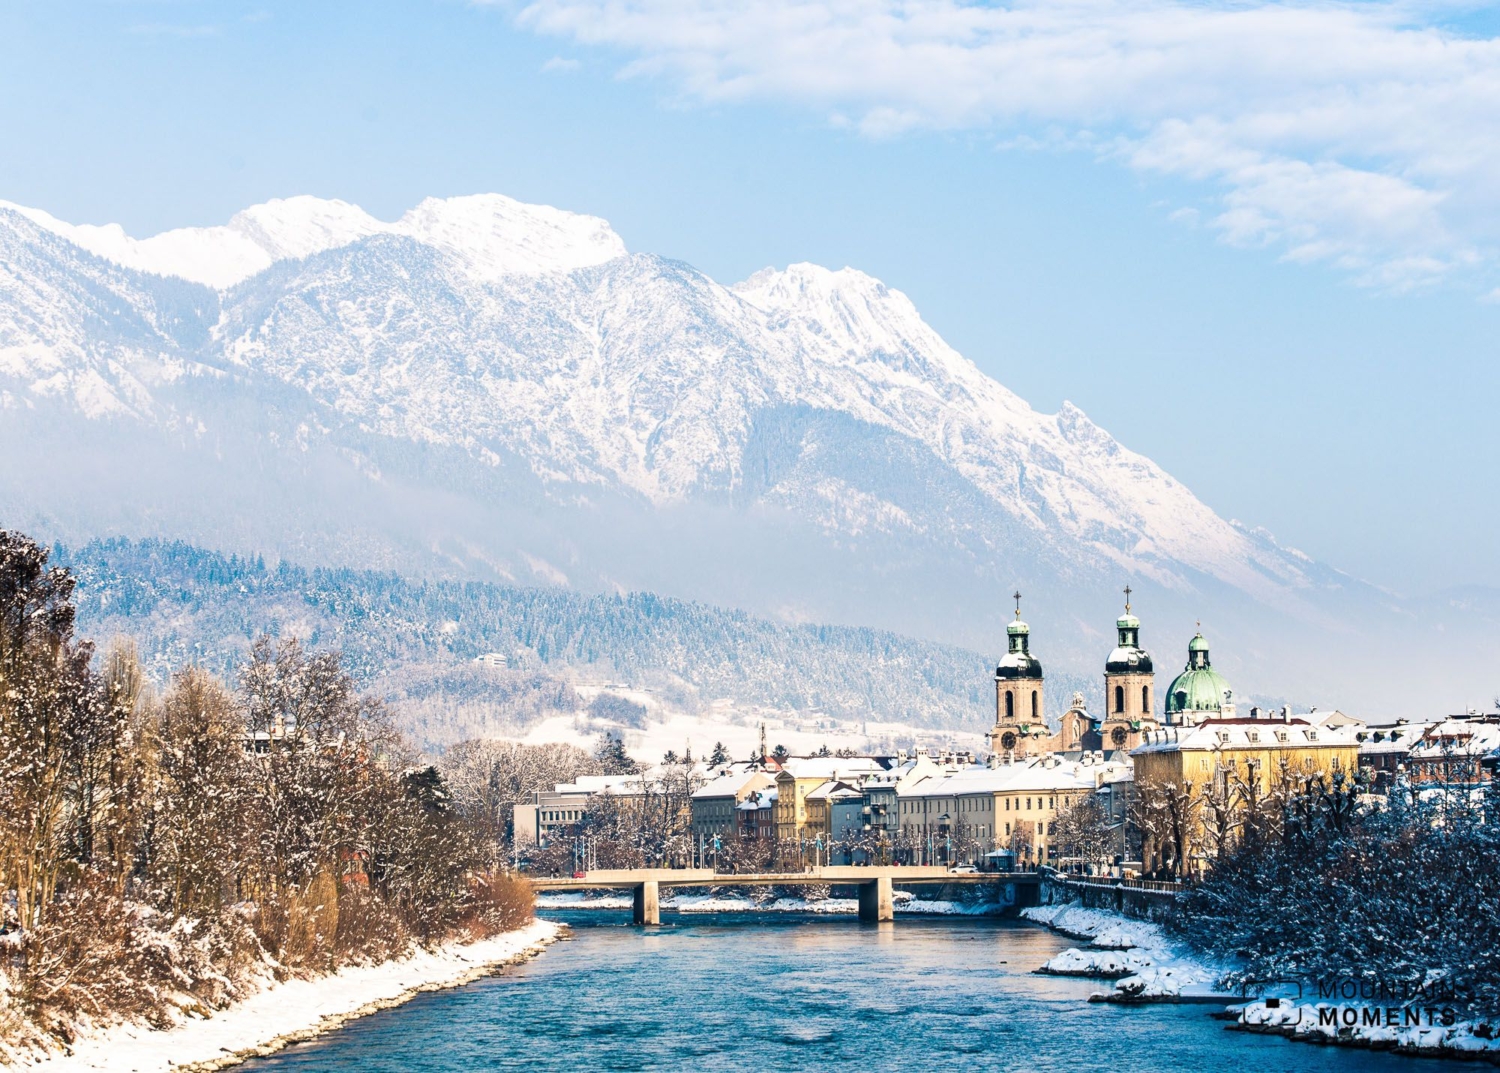 Winterwandern, Langlauf + Rodeln: Die schönsten Wintersport-Alternativen rund um Innsbruck